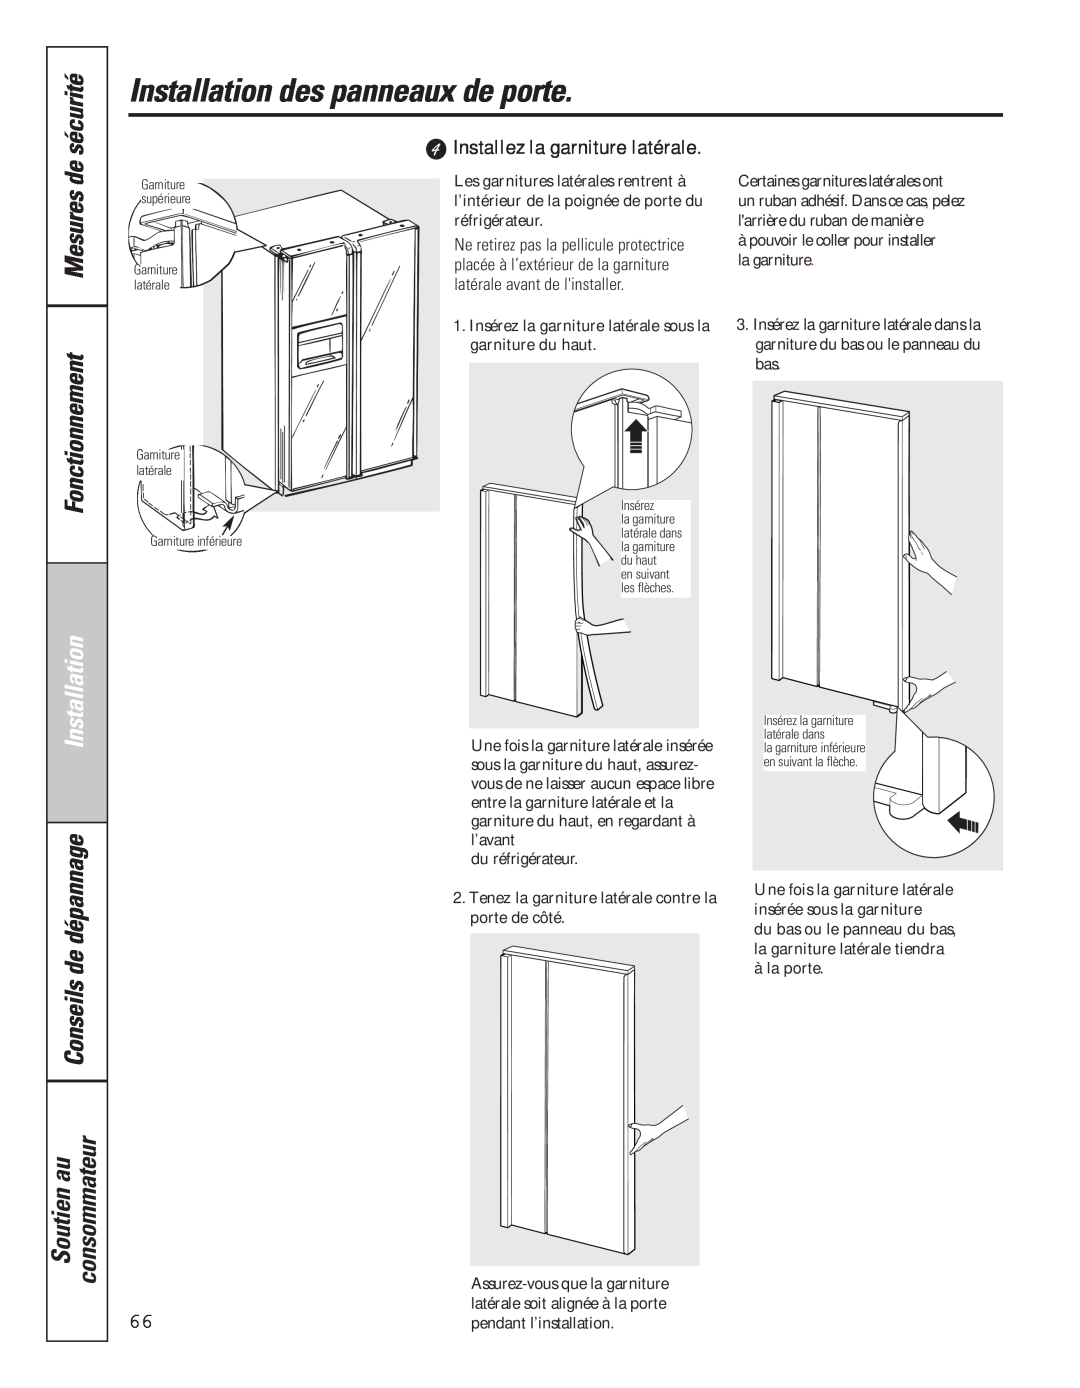 GE 49-60637 Installez la garniture latérale, Installation des panneaux de porte, sécurité, Fonctionnement, Mesures de 